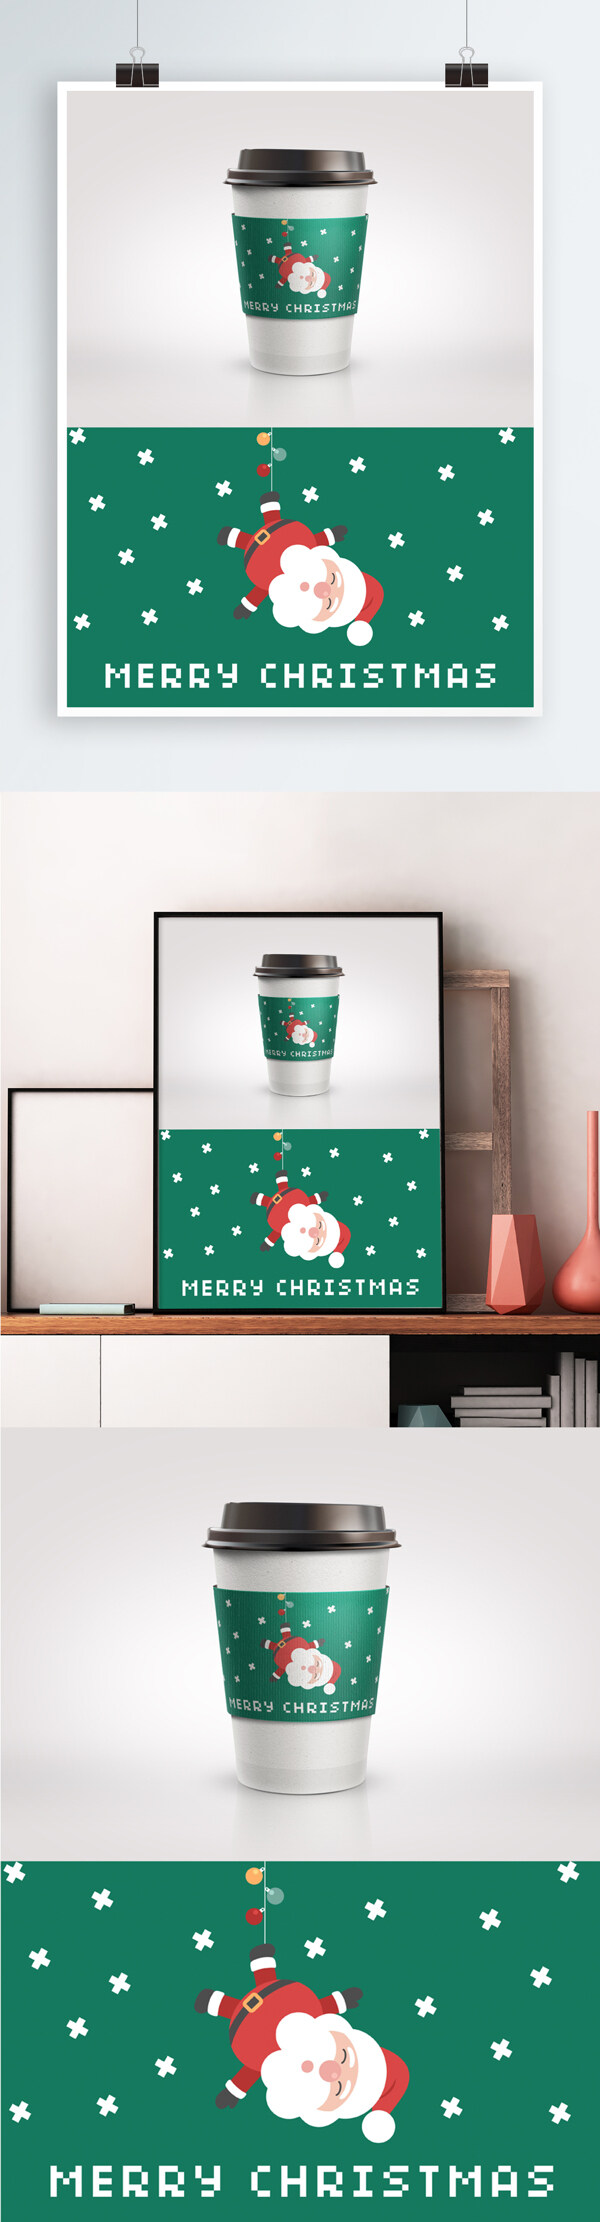 圣诞可爱绿色咖啡杯杯套